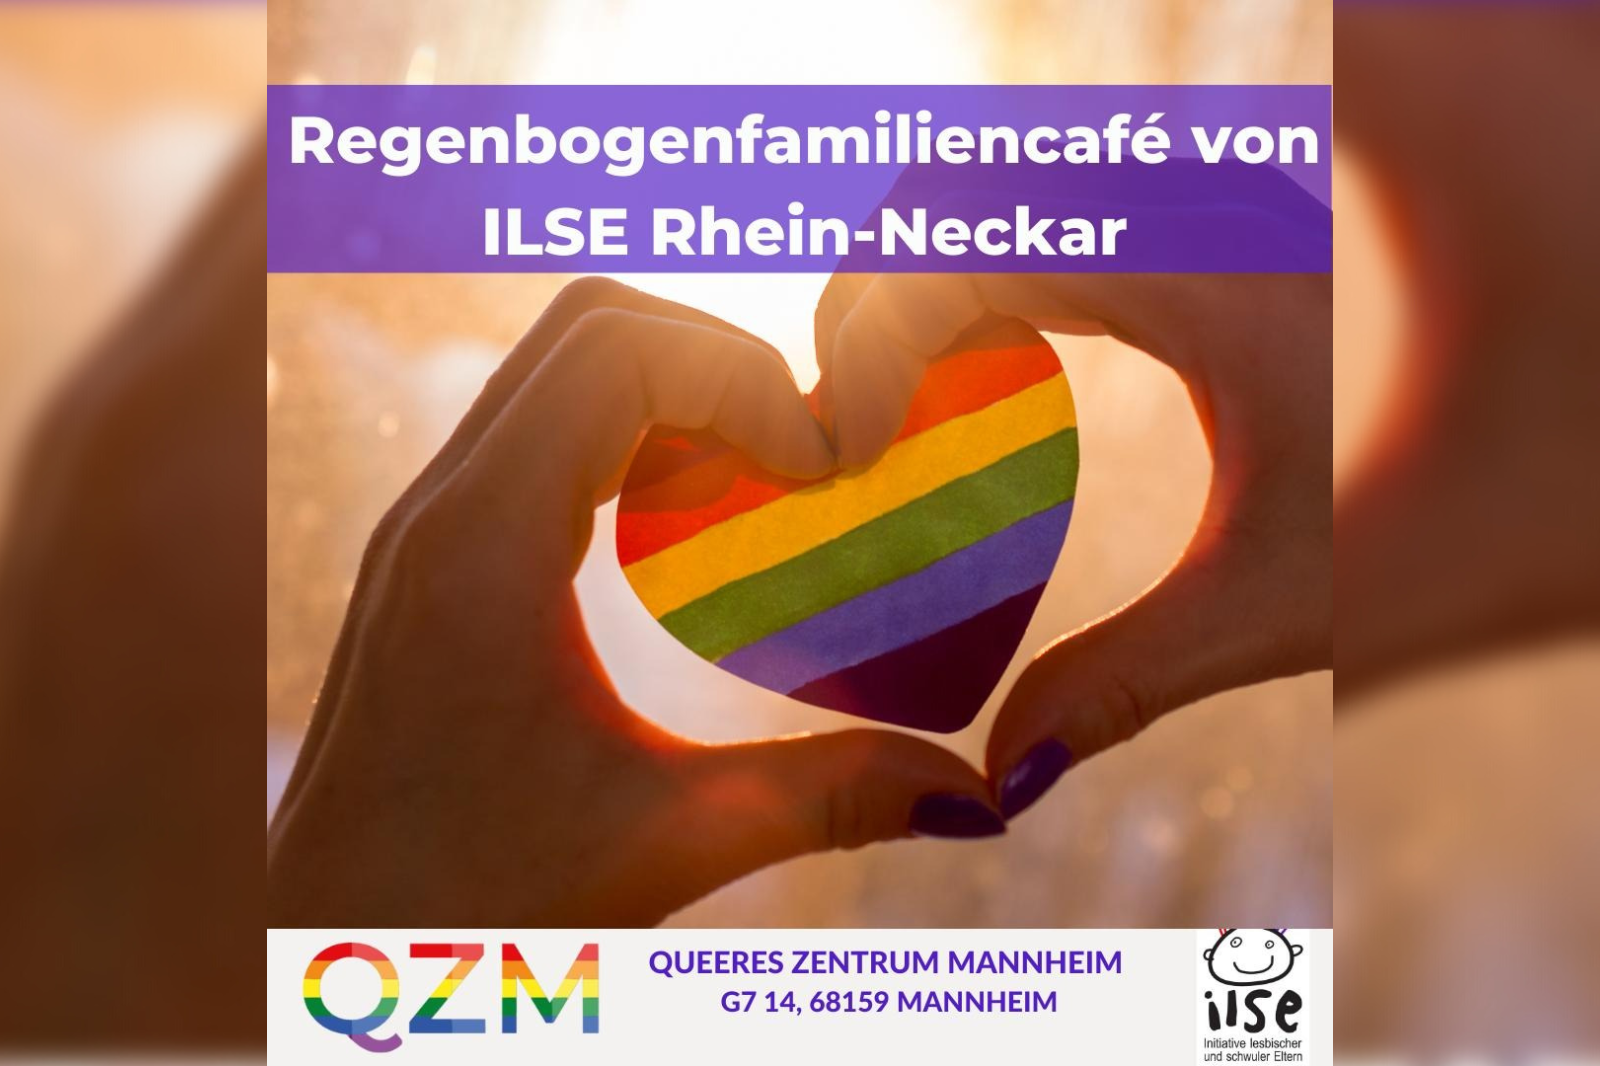 Regenbogenfamiliencafé von ILSE Rhein-Neckar am 12.03. um 11:00 Uhr im QZM.